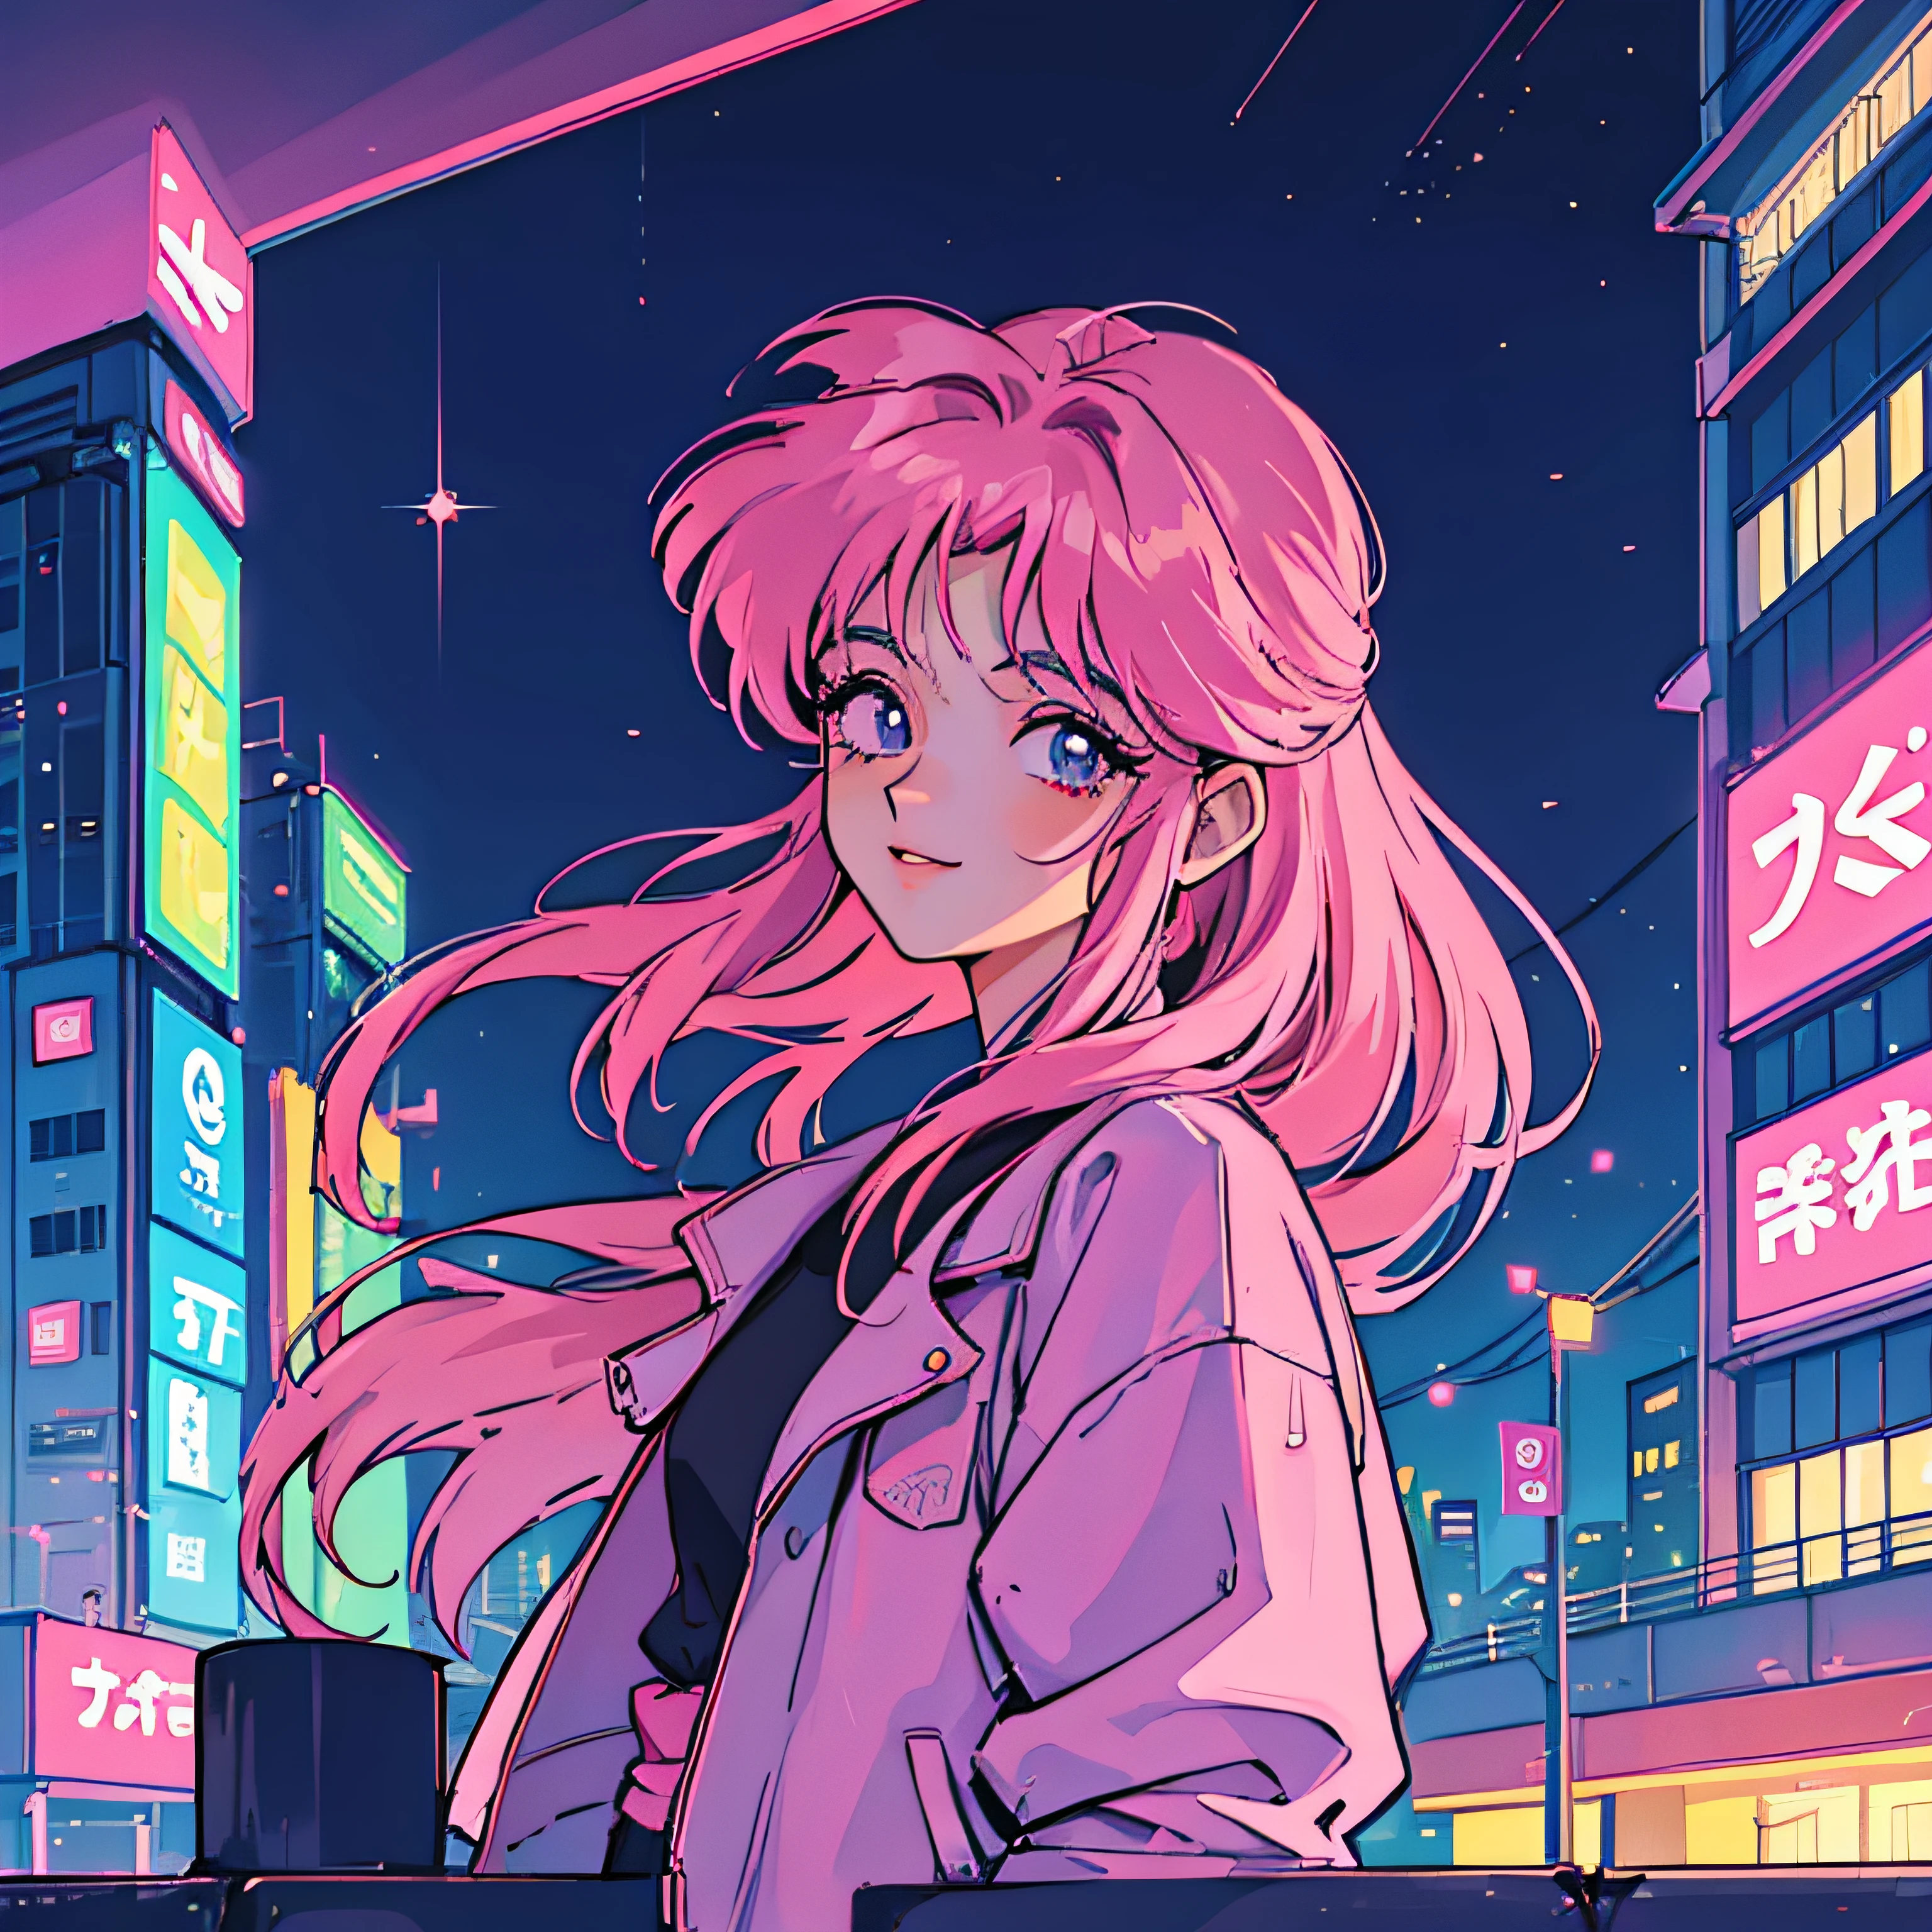 garota de 短发, 短发 e rosa, 赛博朋克城市景观 , 城市的夜晚, 丰富多彩的, anime 90年代, 90年代, 称赞, 氖, 复古的, 许多商店, 微笑着, 面对我 , 短发, 粉红色的头发, 满街